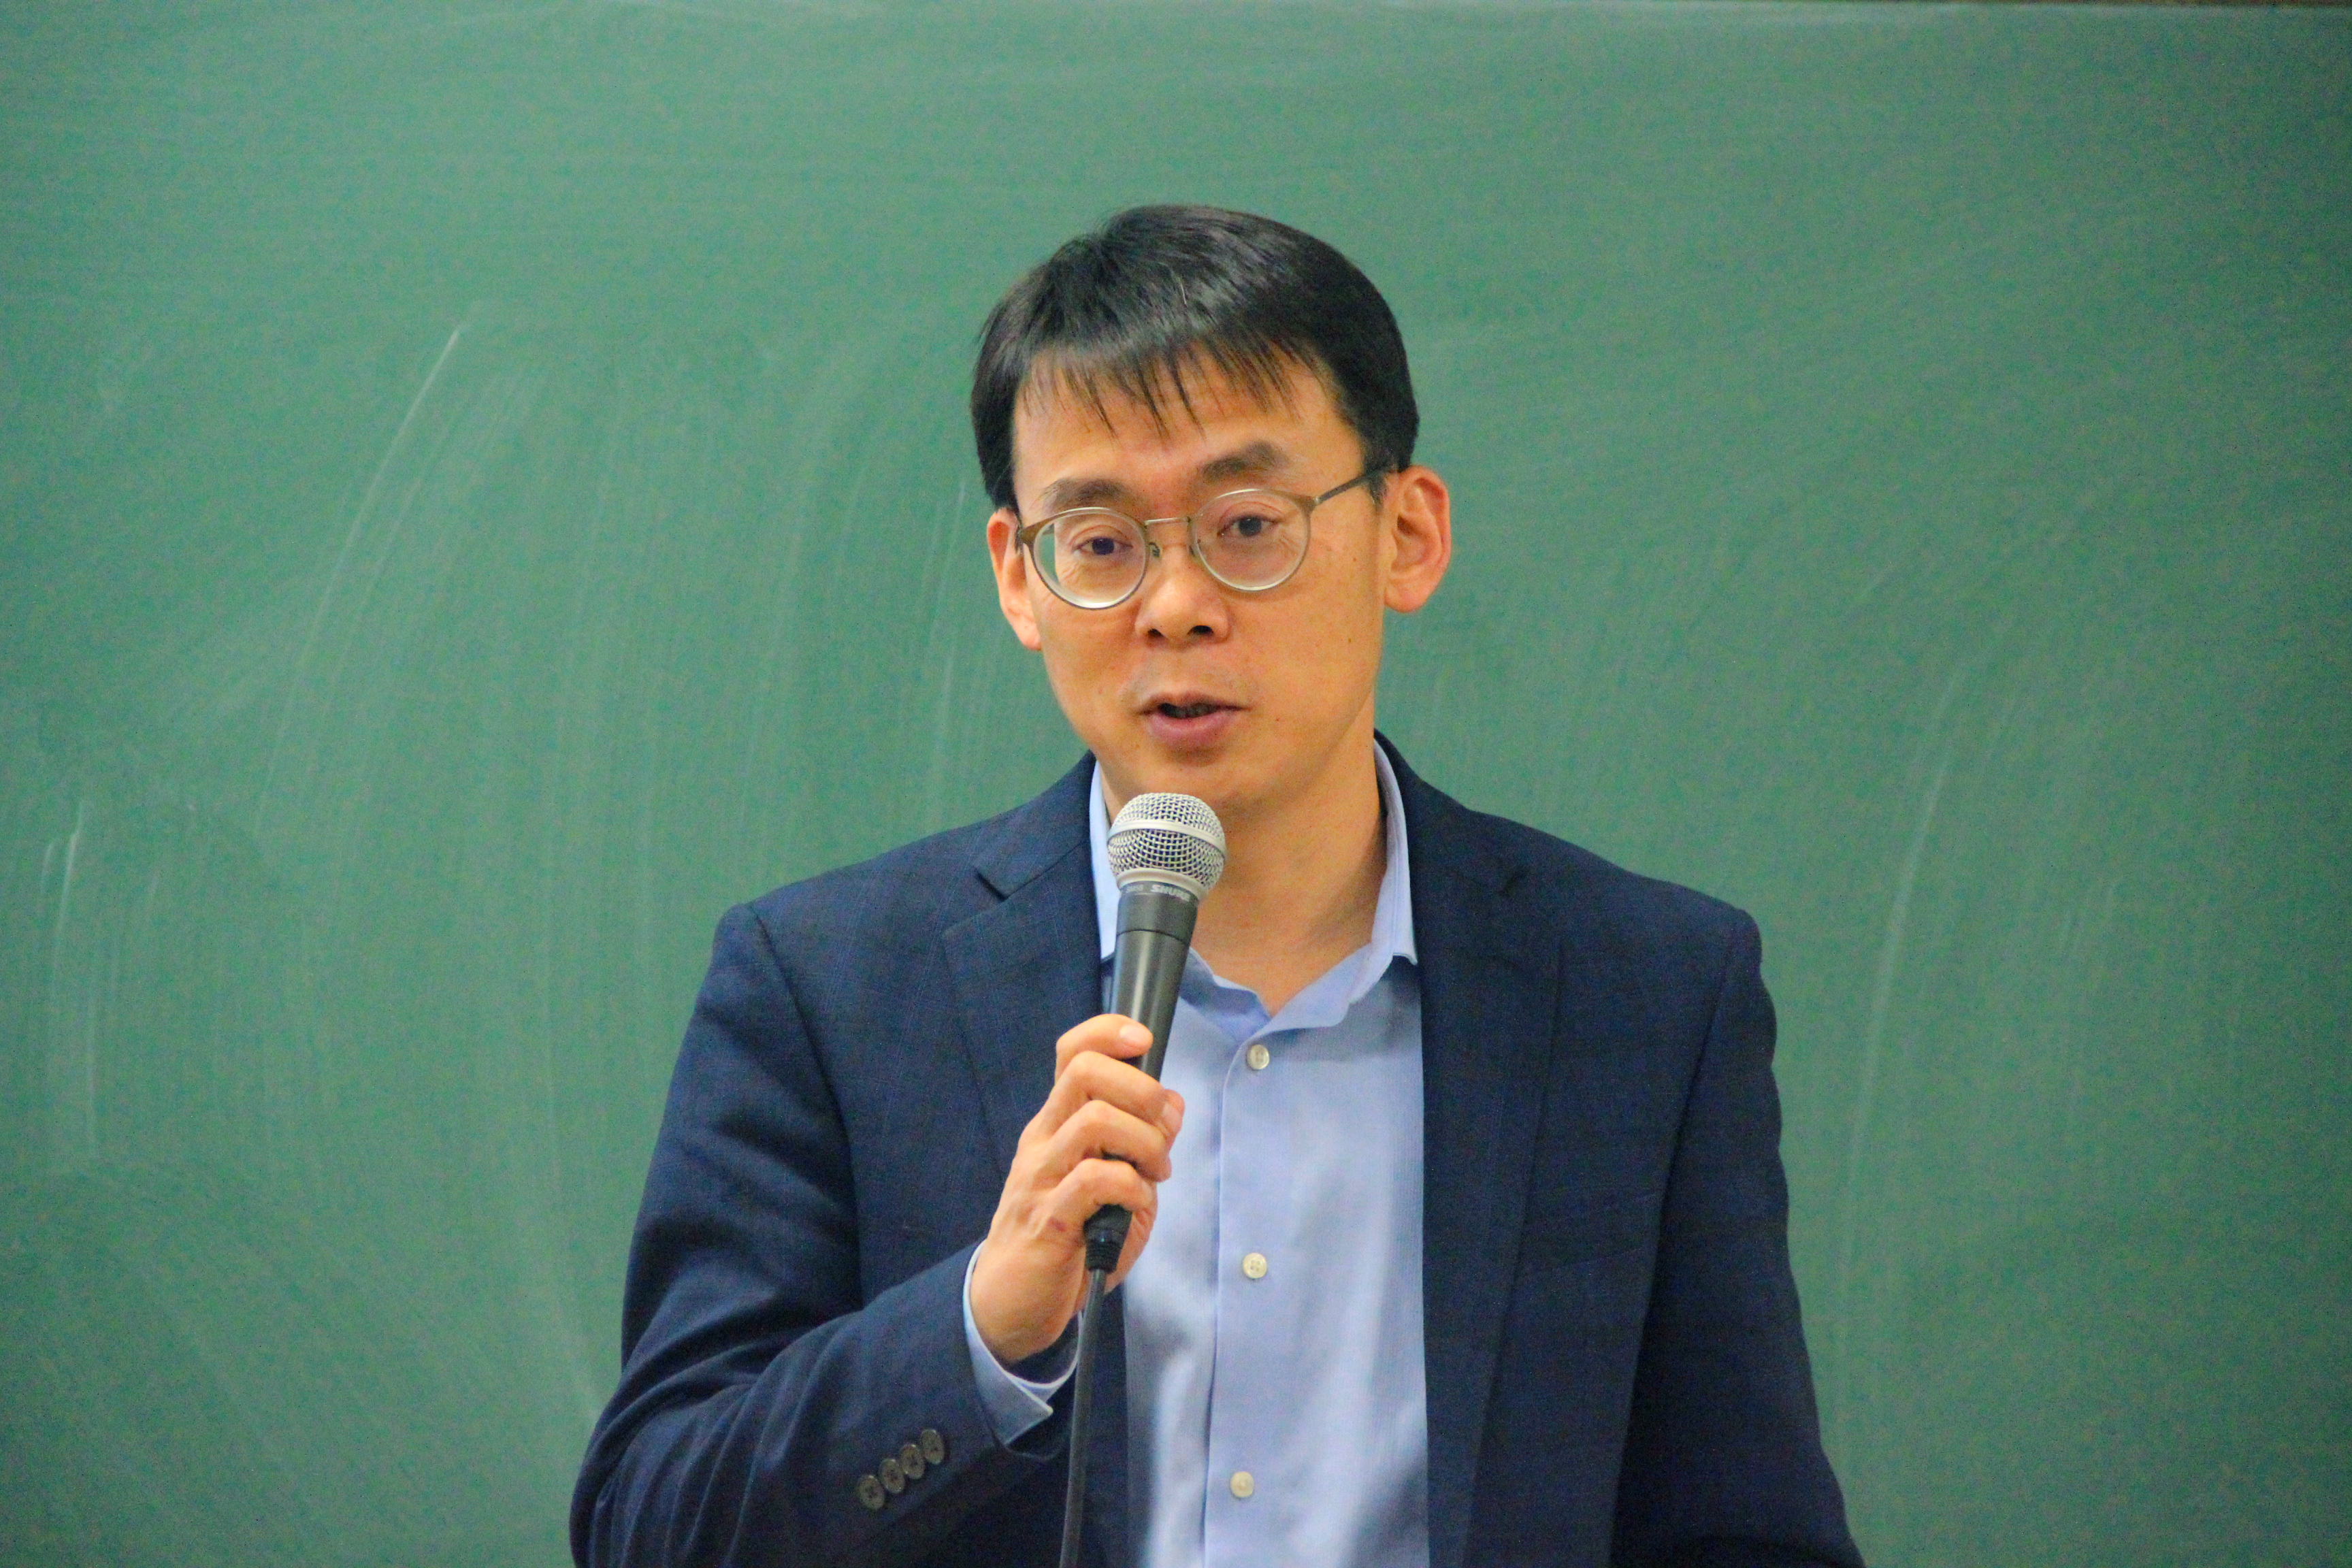 人大法学院副院长张翔教授谈"法学方法论与法学写作"